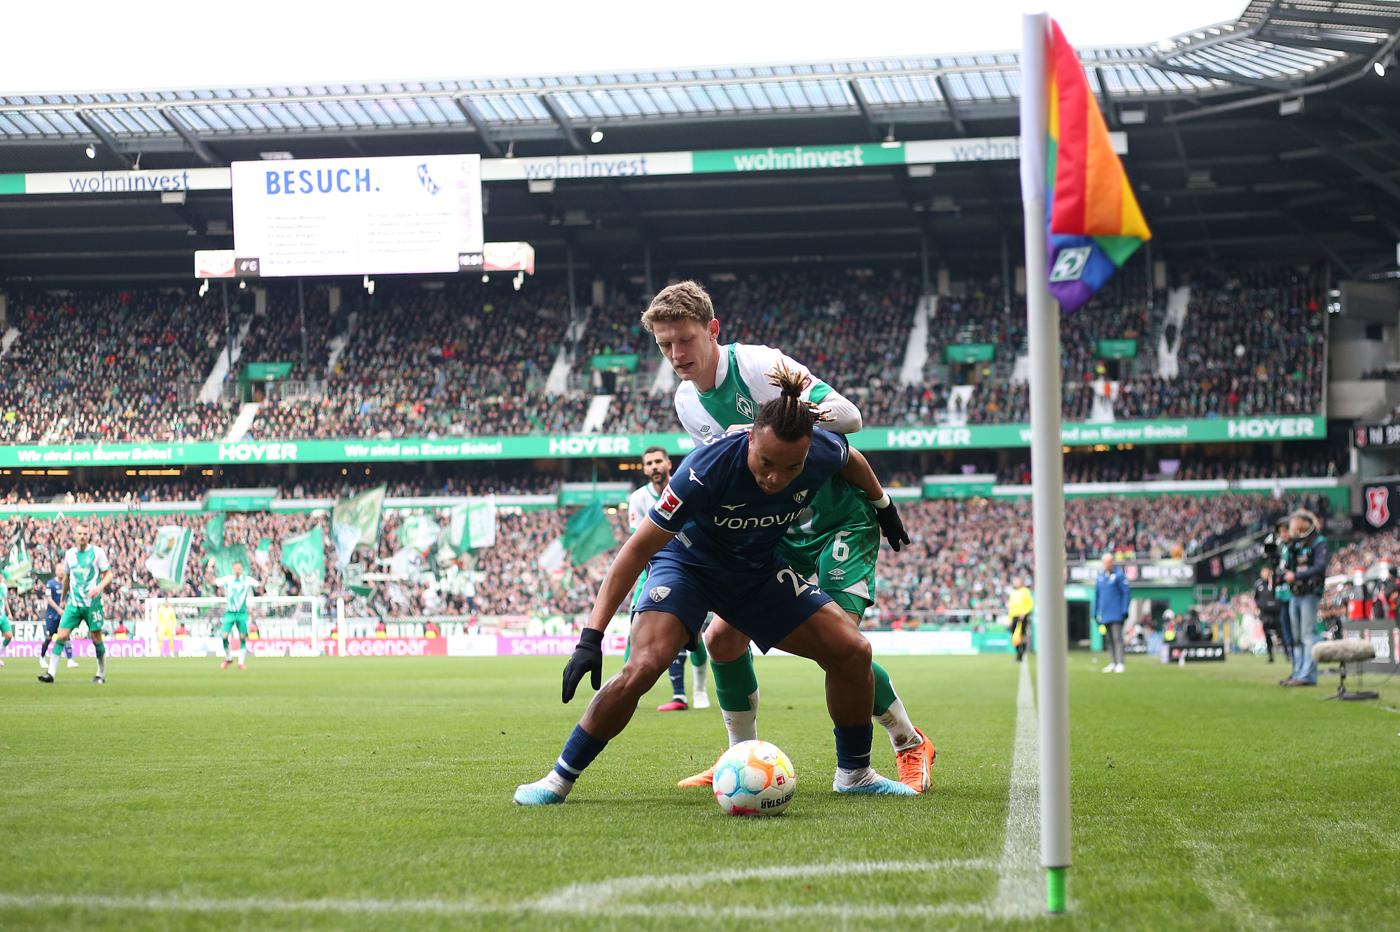 Werder Brema - Bochum - 3:0. Mistrzostwa Niemiec, 22. runda. Przegląd meczu, statystyki